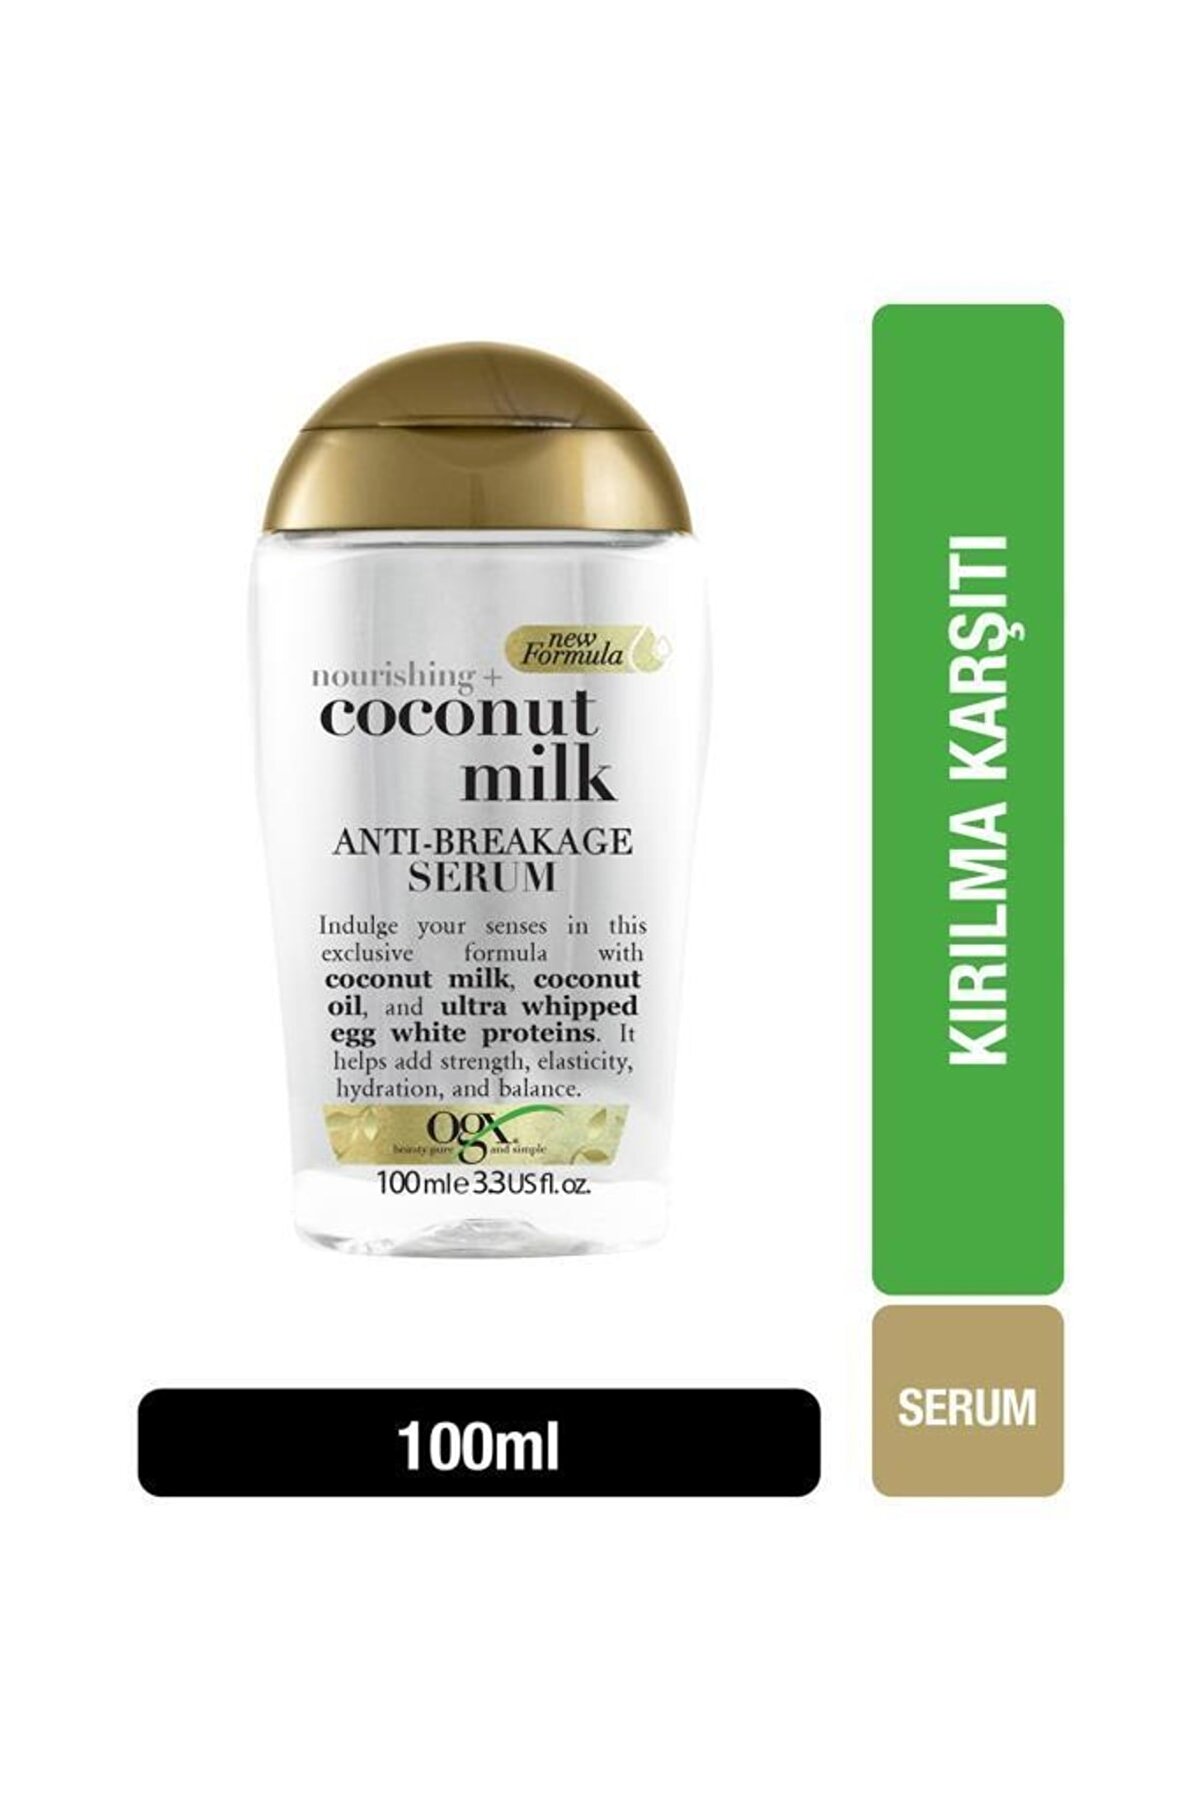 OGX Besleyici ve Kırılma Karşıtı Sülfatsız Coconut Milk Serum 100 ml